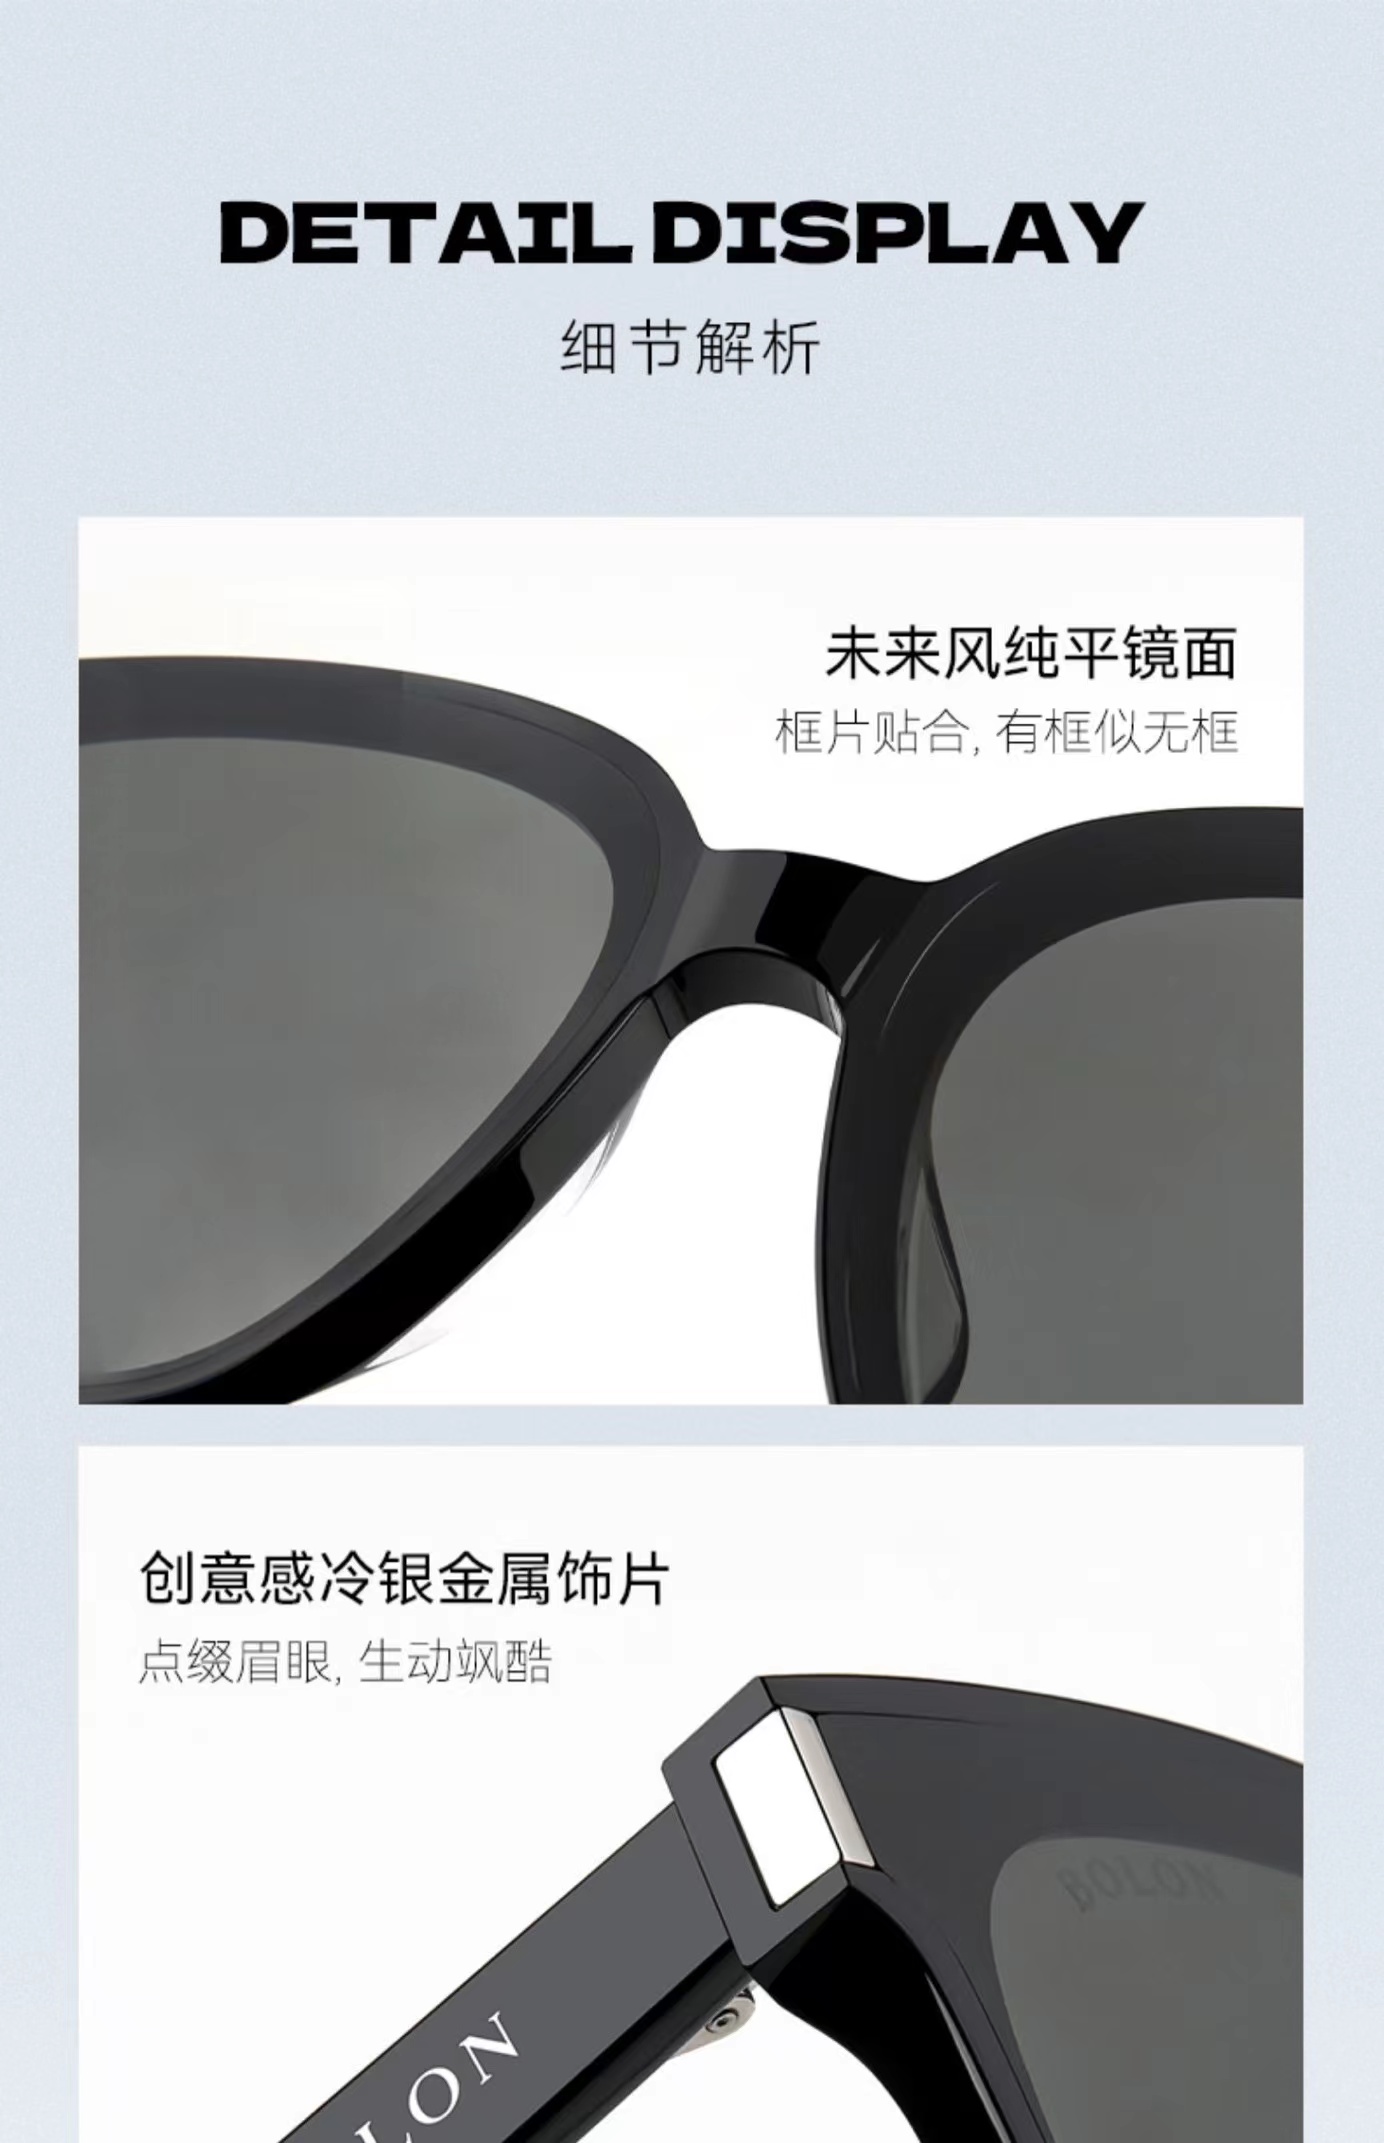 BOLON暴龙眼镜2023新品王俊凯同款方形偏光太阳镜男女墨镜BL3112